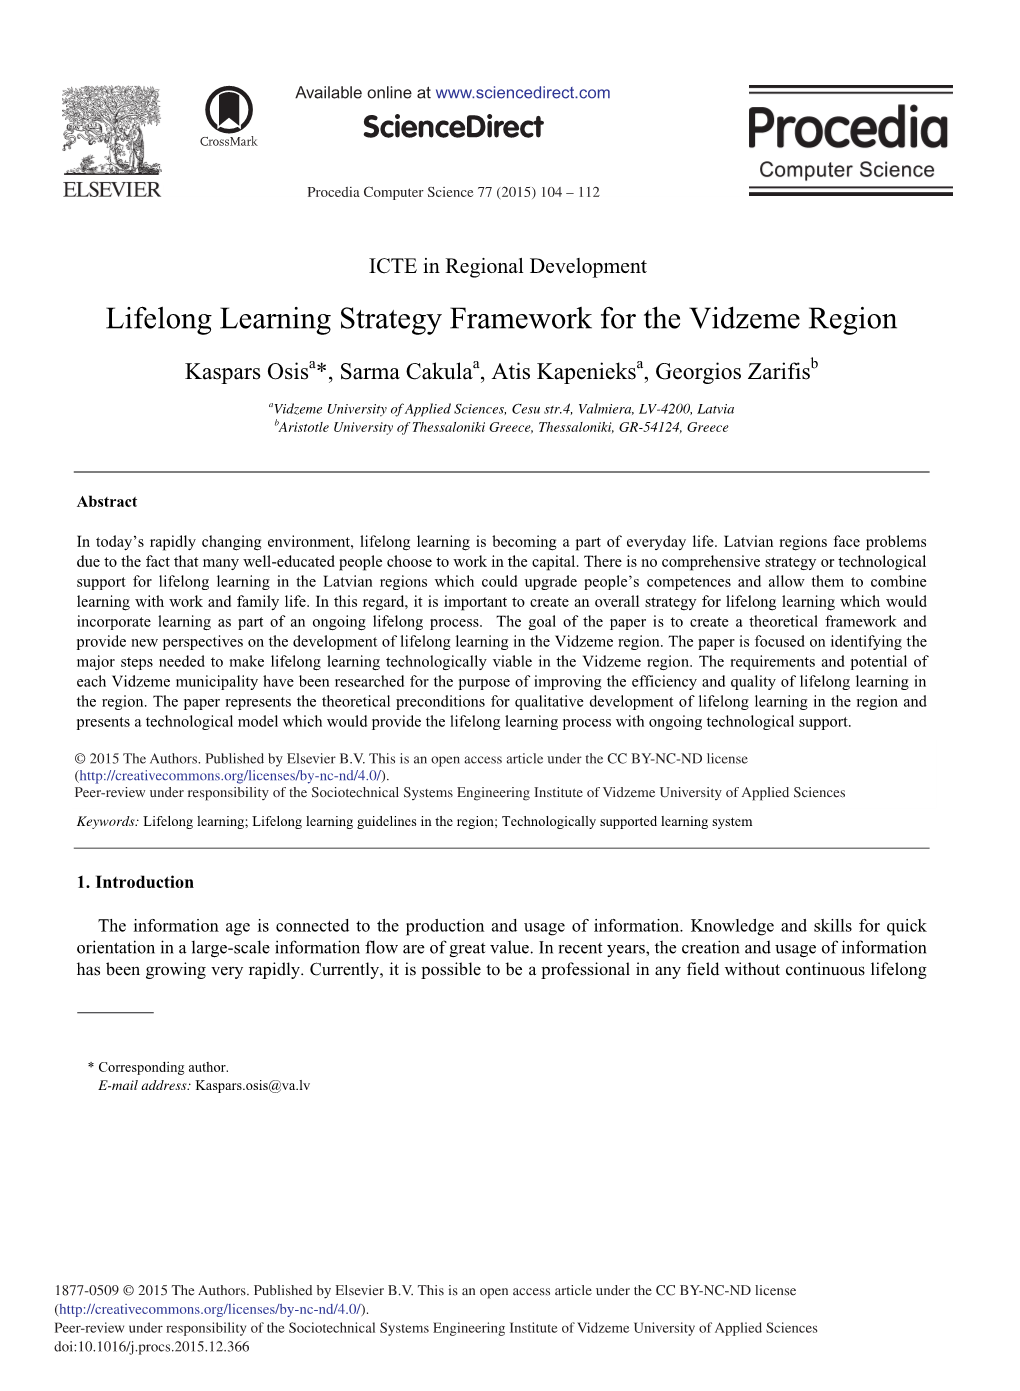 Lifelong Learning Strategy Framework for the Vidzeme Region